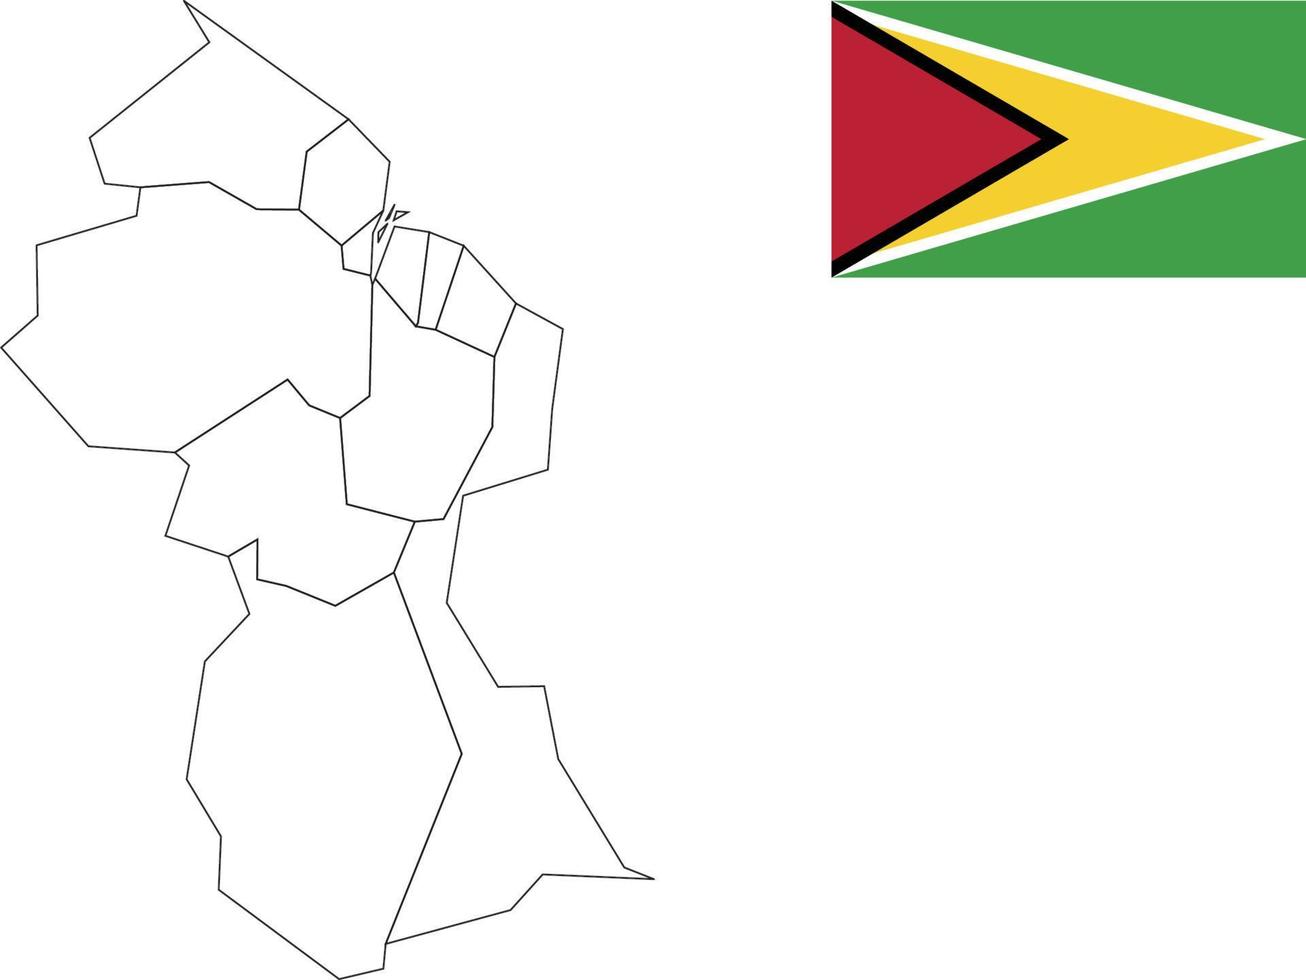 Karte und Flagge von Guyana vektor